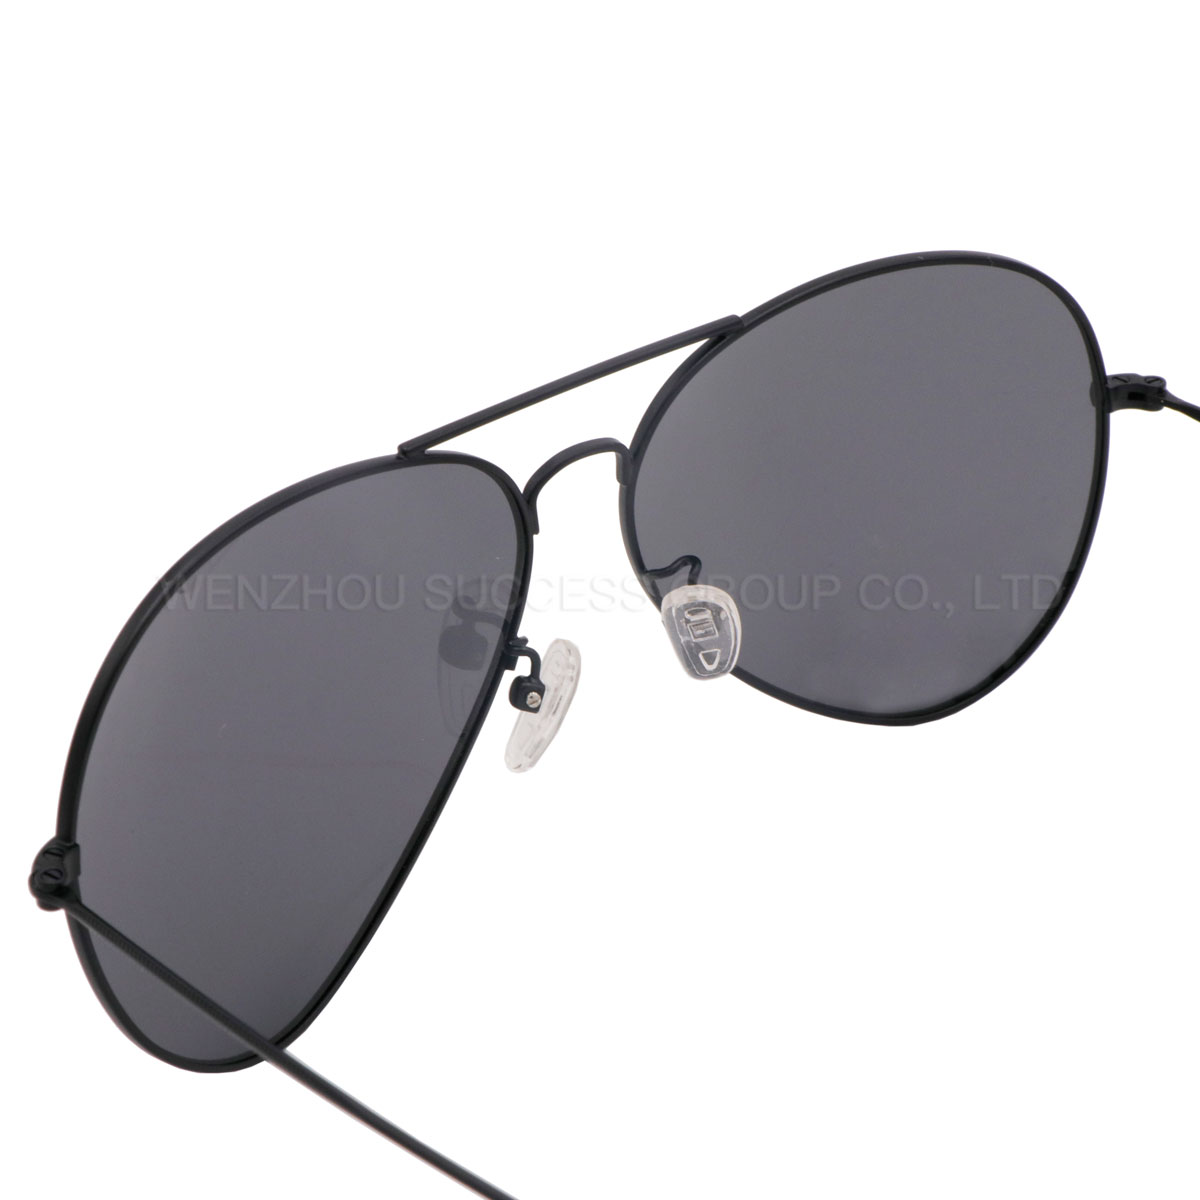 Unisex metal sunglasses SJL1801 - 4 